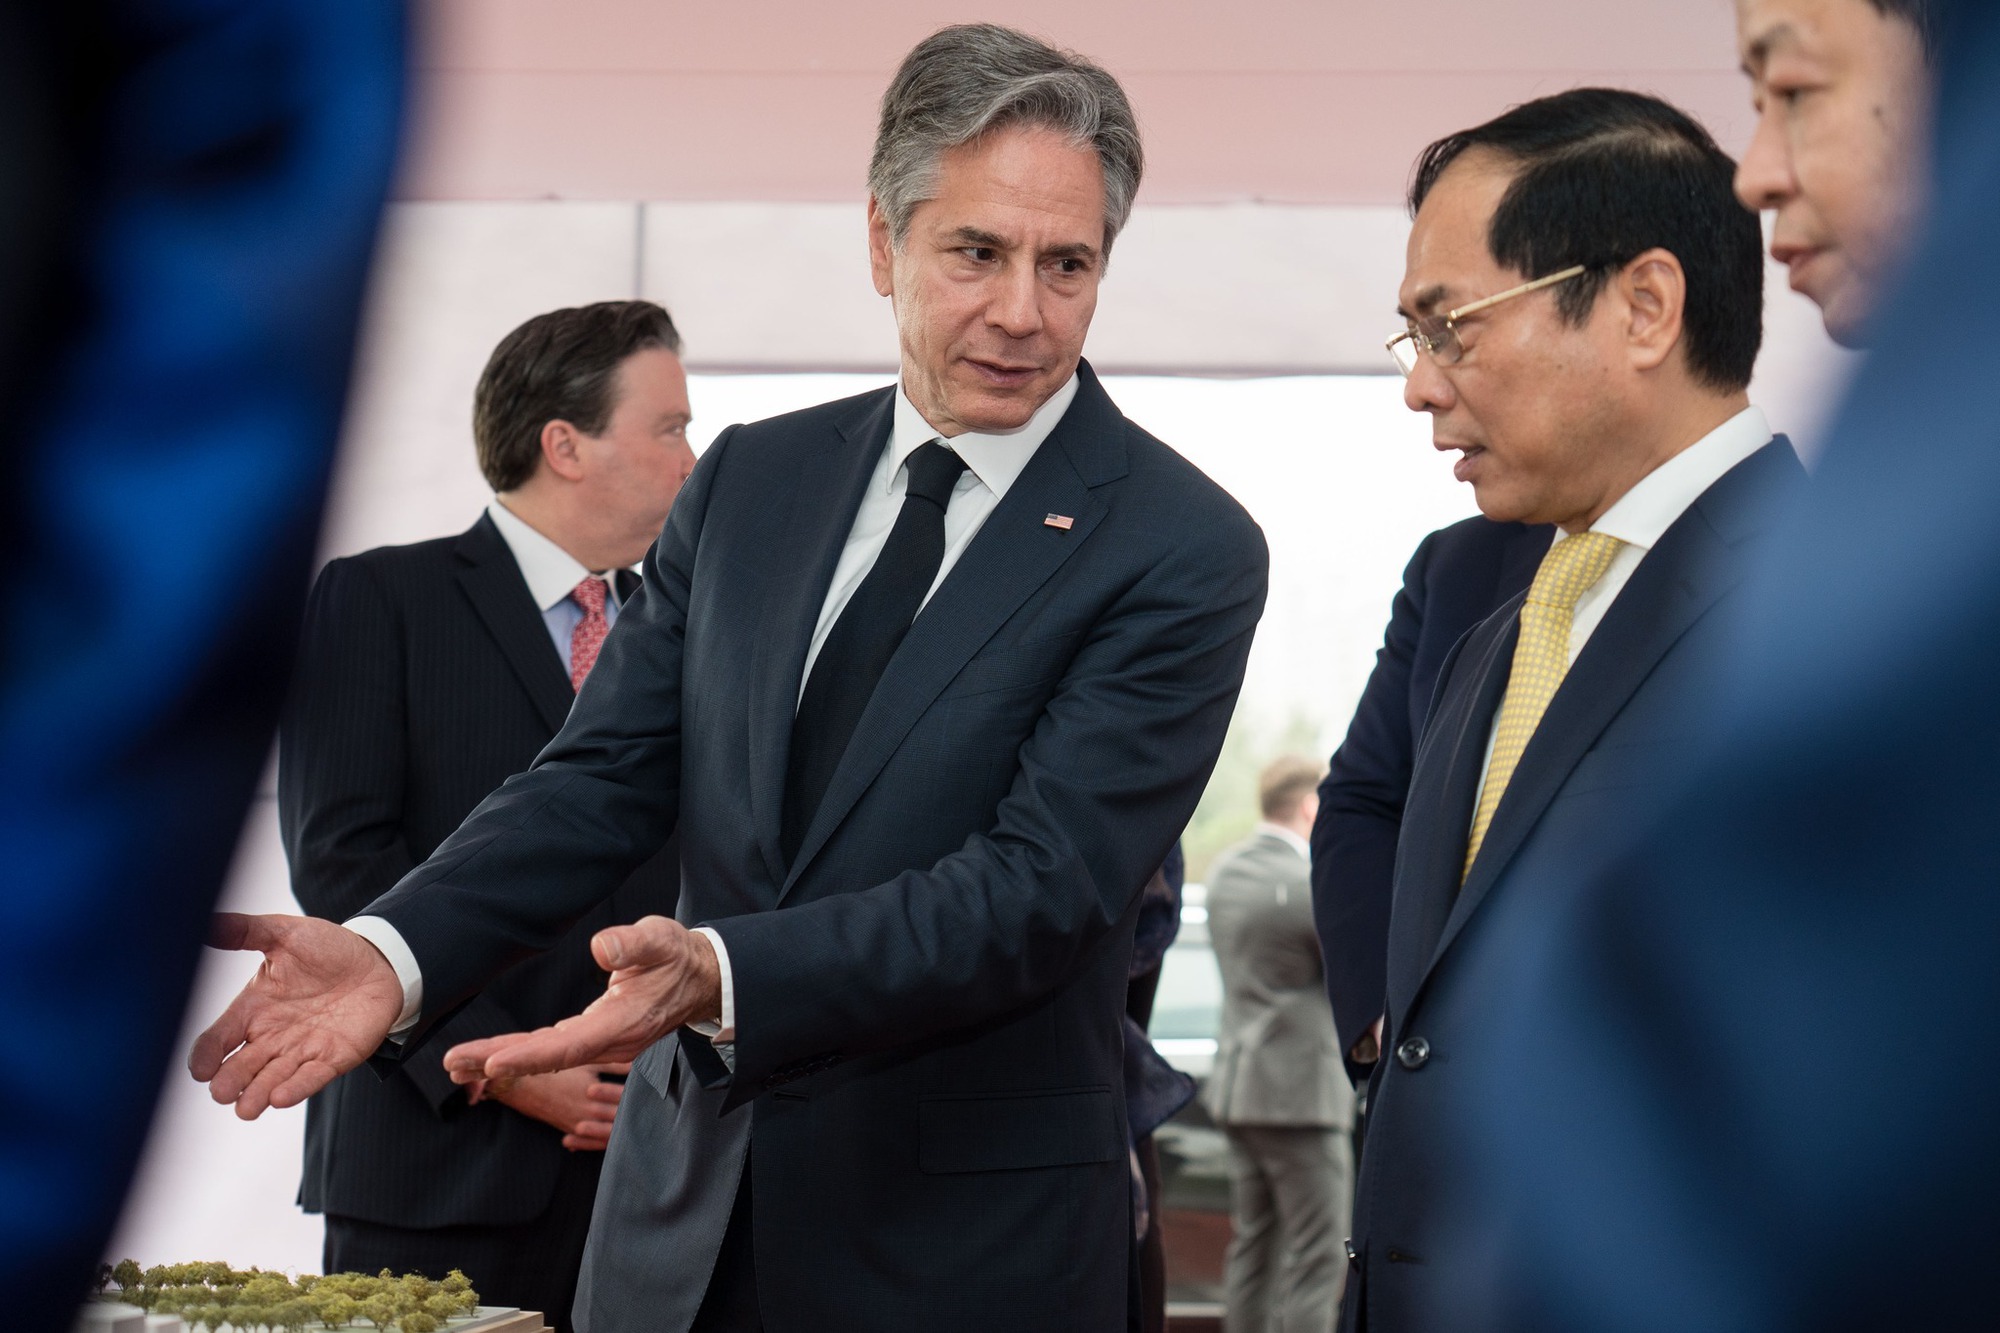 Ngoại trưởng Antony Blinken dự lễ khởi công trụ sở mới Đại sứ quán Hoa Kỳ tại Hà Nội - Ảnh 3.